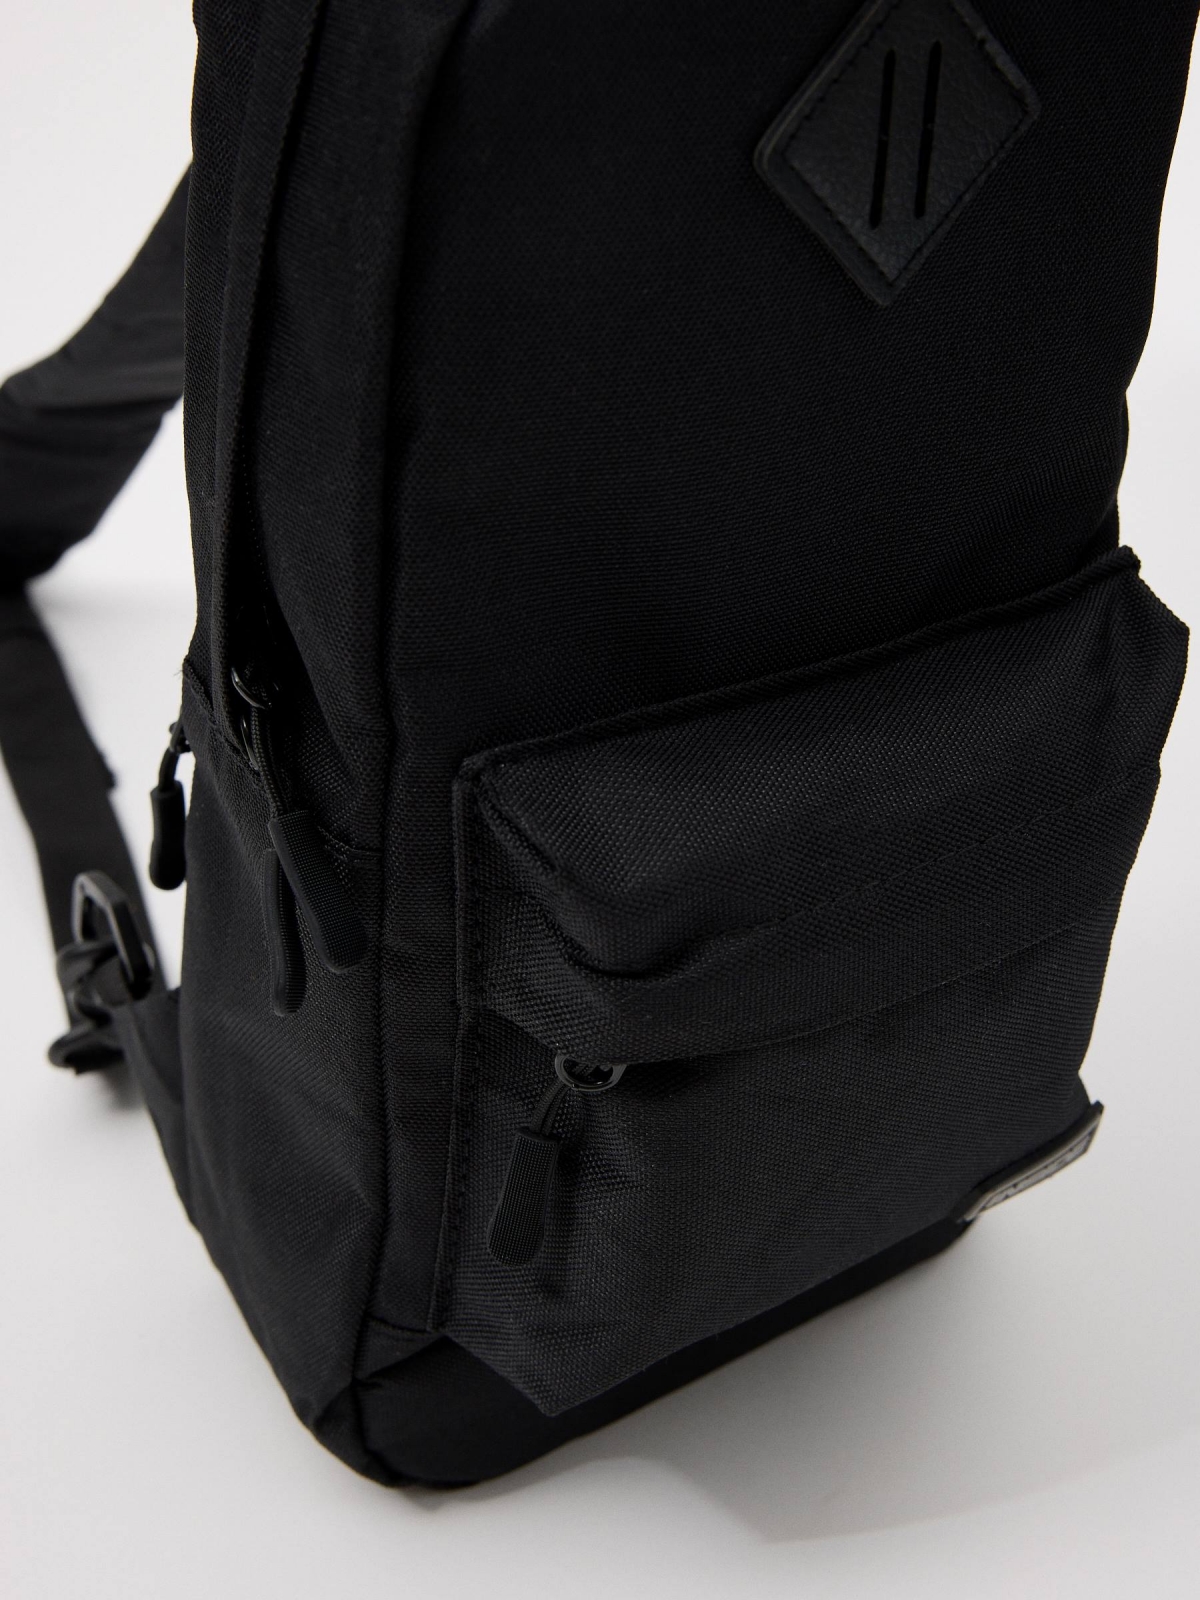 Men's shoulder bag black detail view